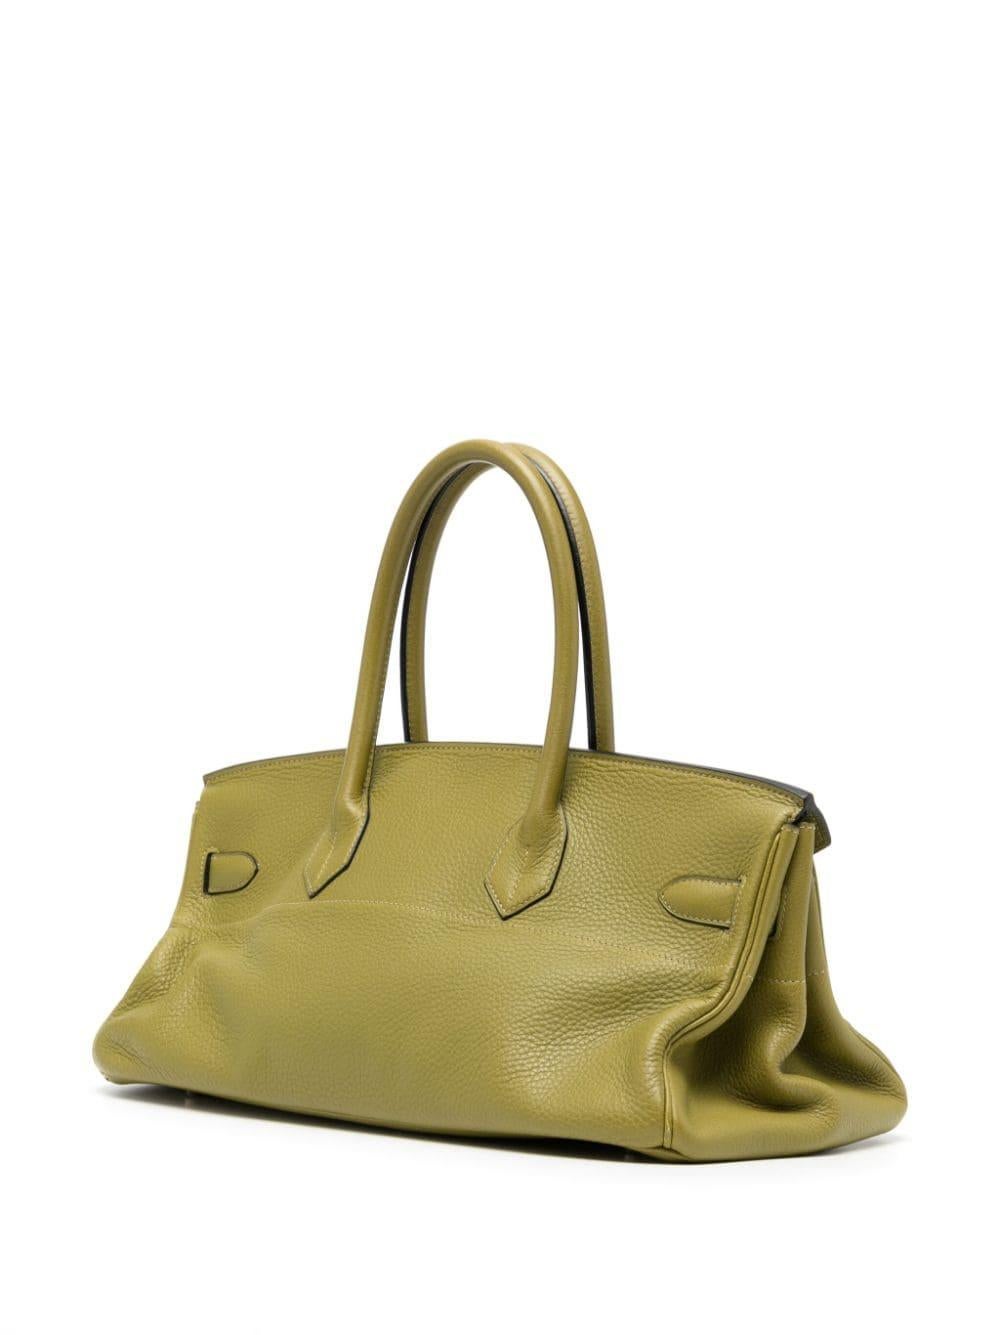 Ce sac Birkin de 42 cm conçu par Jean Paul Gaultier est une pièce unique. Pendant son mandat de directeur de la création chez Hermès, de 2003 à 2010, JPG a réimaginé certains des classiques bien-aimés d'Hermès, qui sont aujourd'hui devenus des